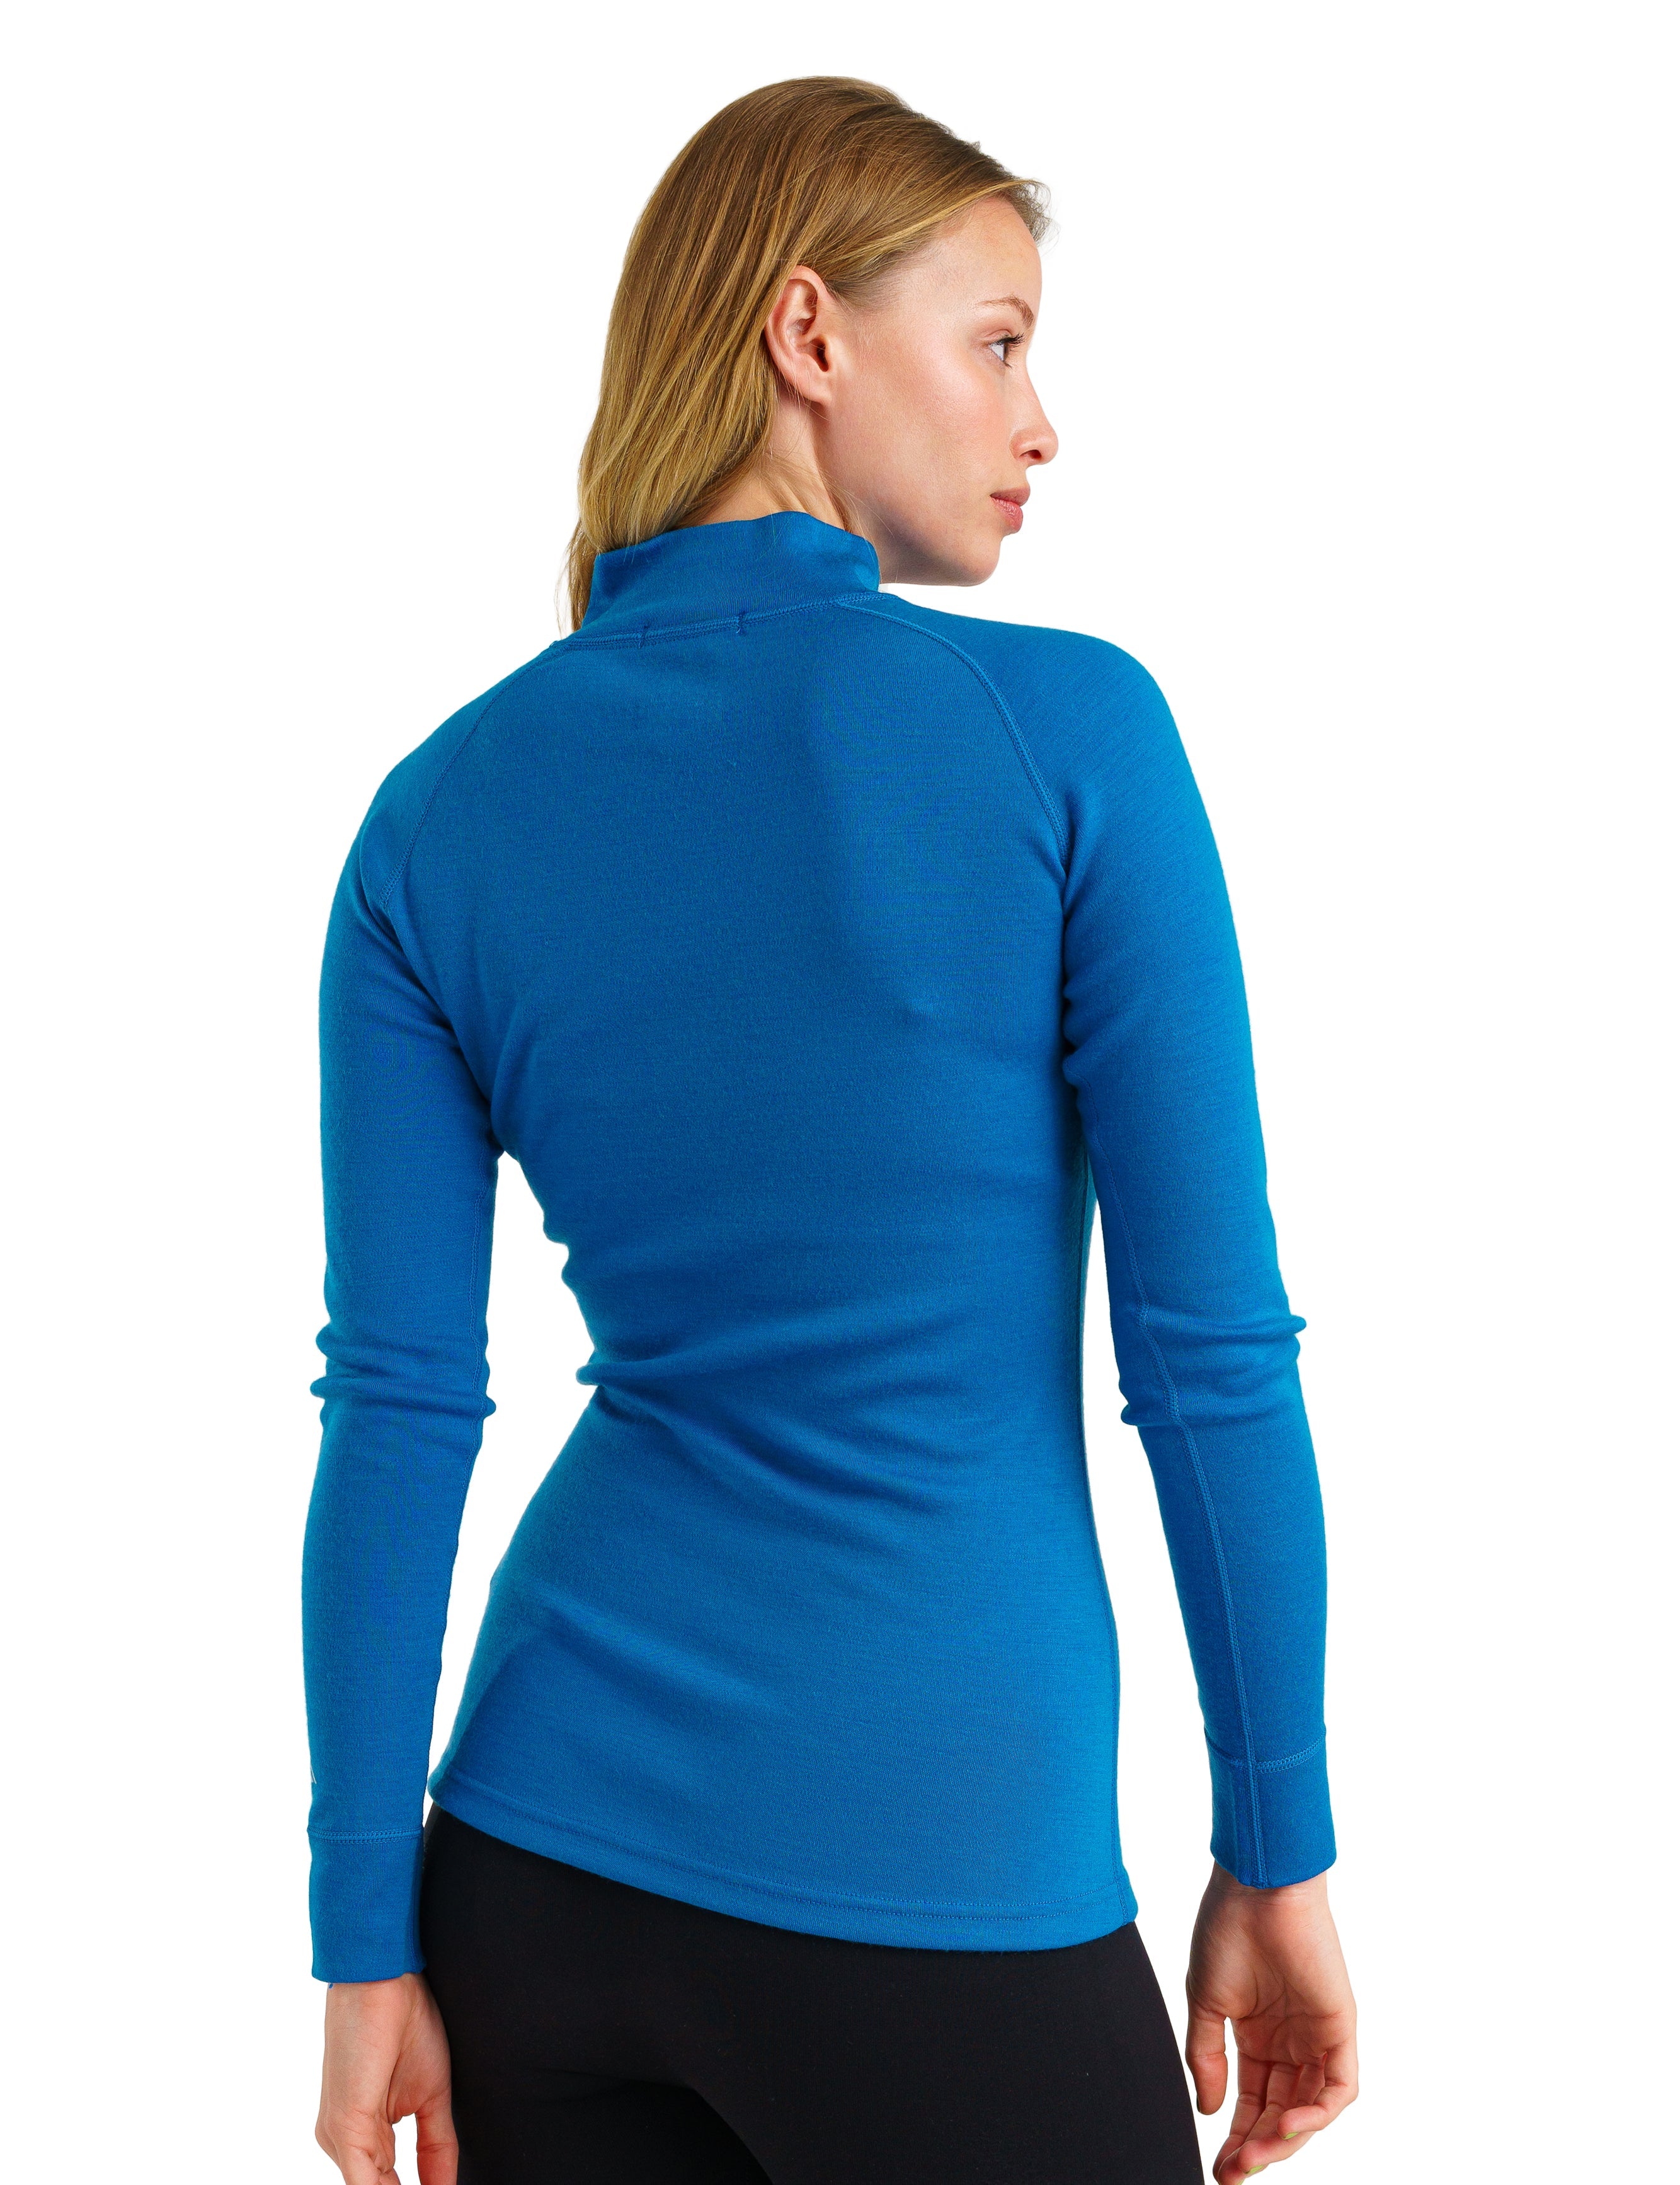 Merino.tech Merino Wool Base Layer Women - 100% Merino Half Zip Sweater  Women Mid, Heavyweight Thermal Shirts + Wool Socks